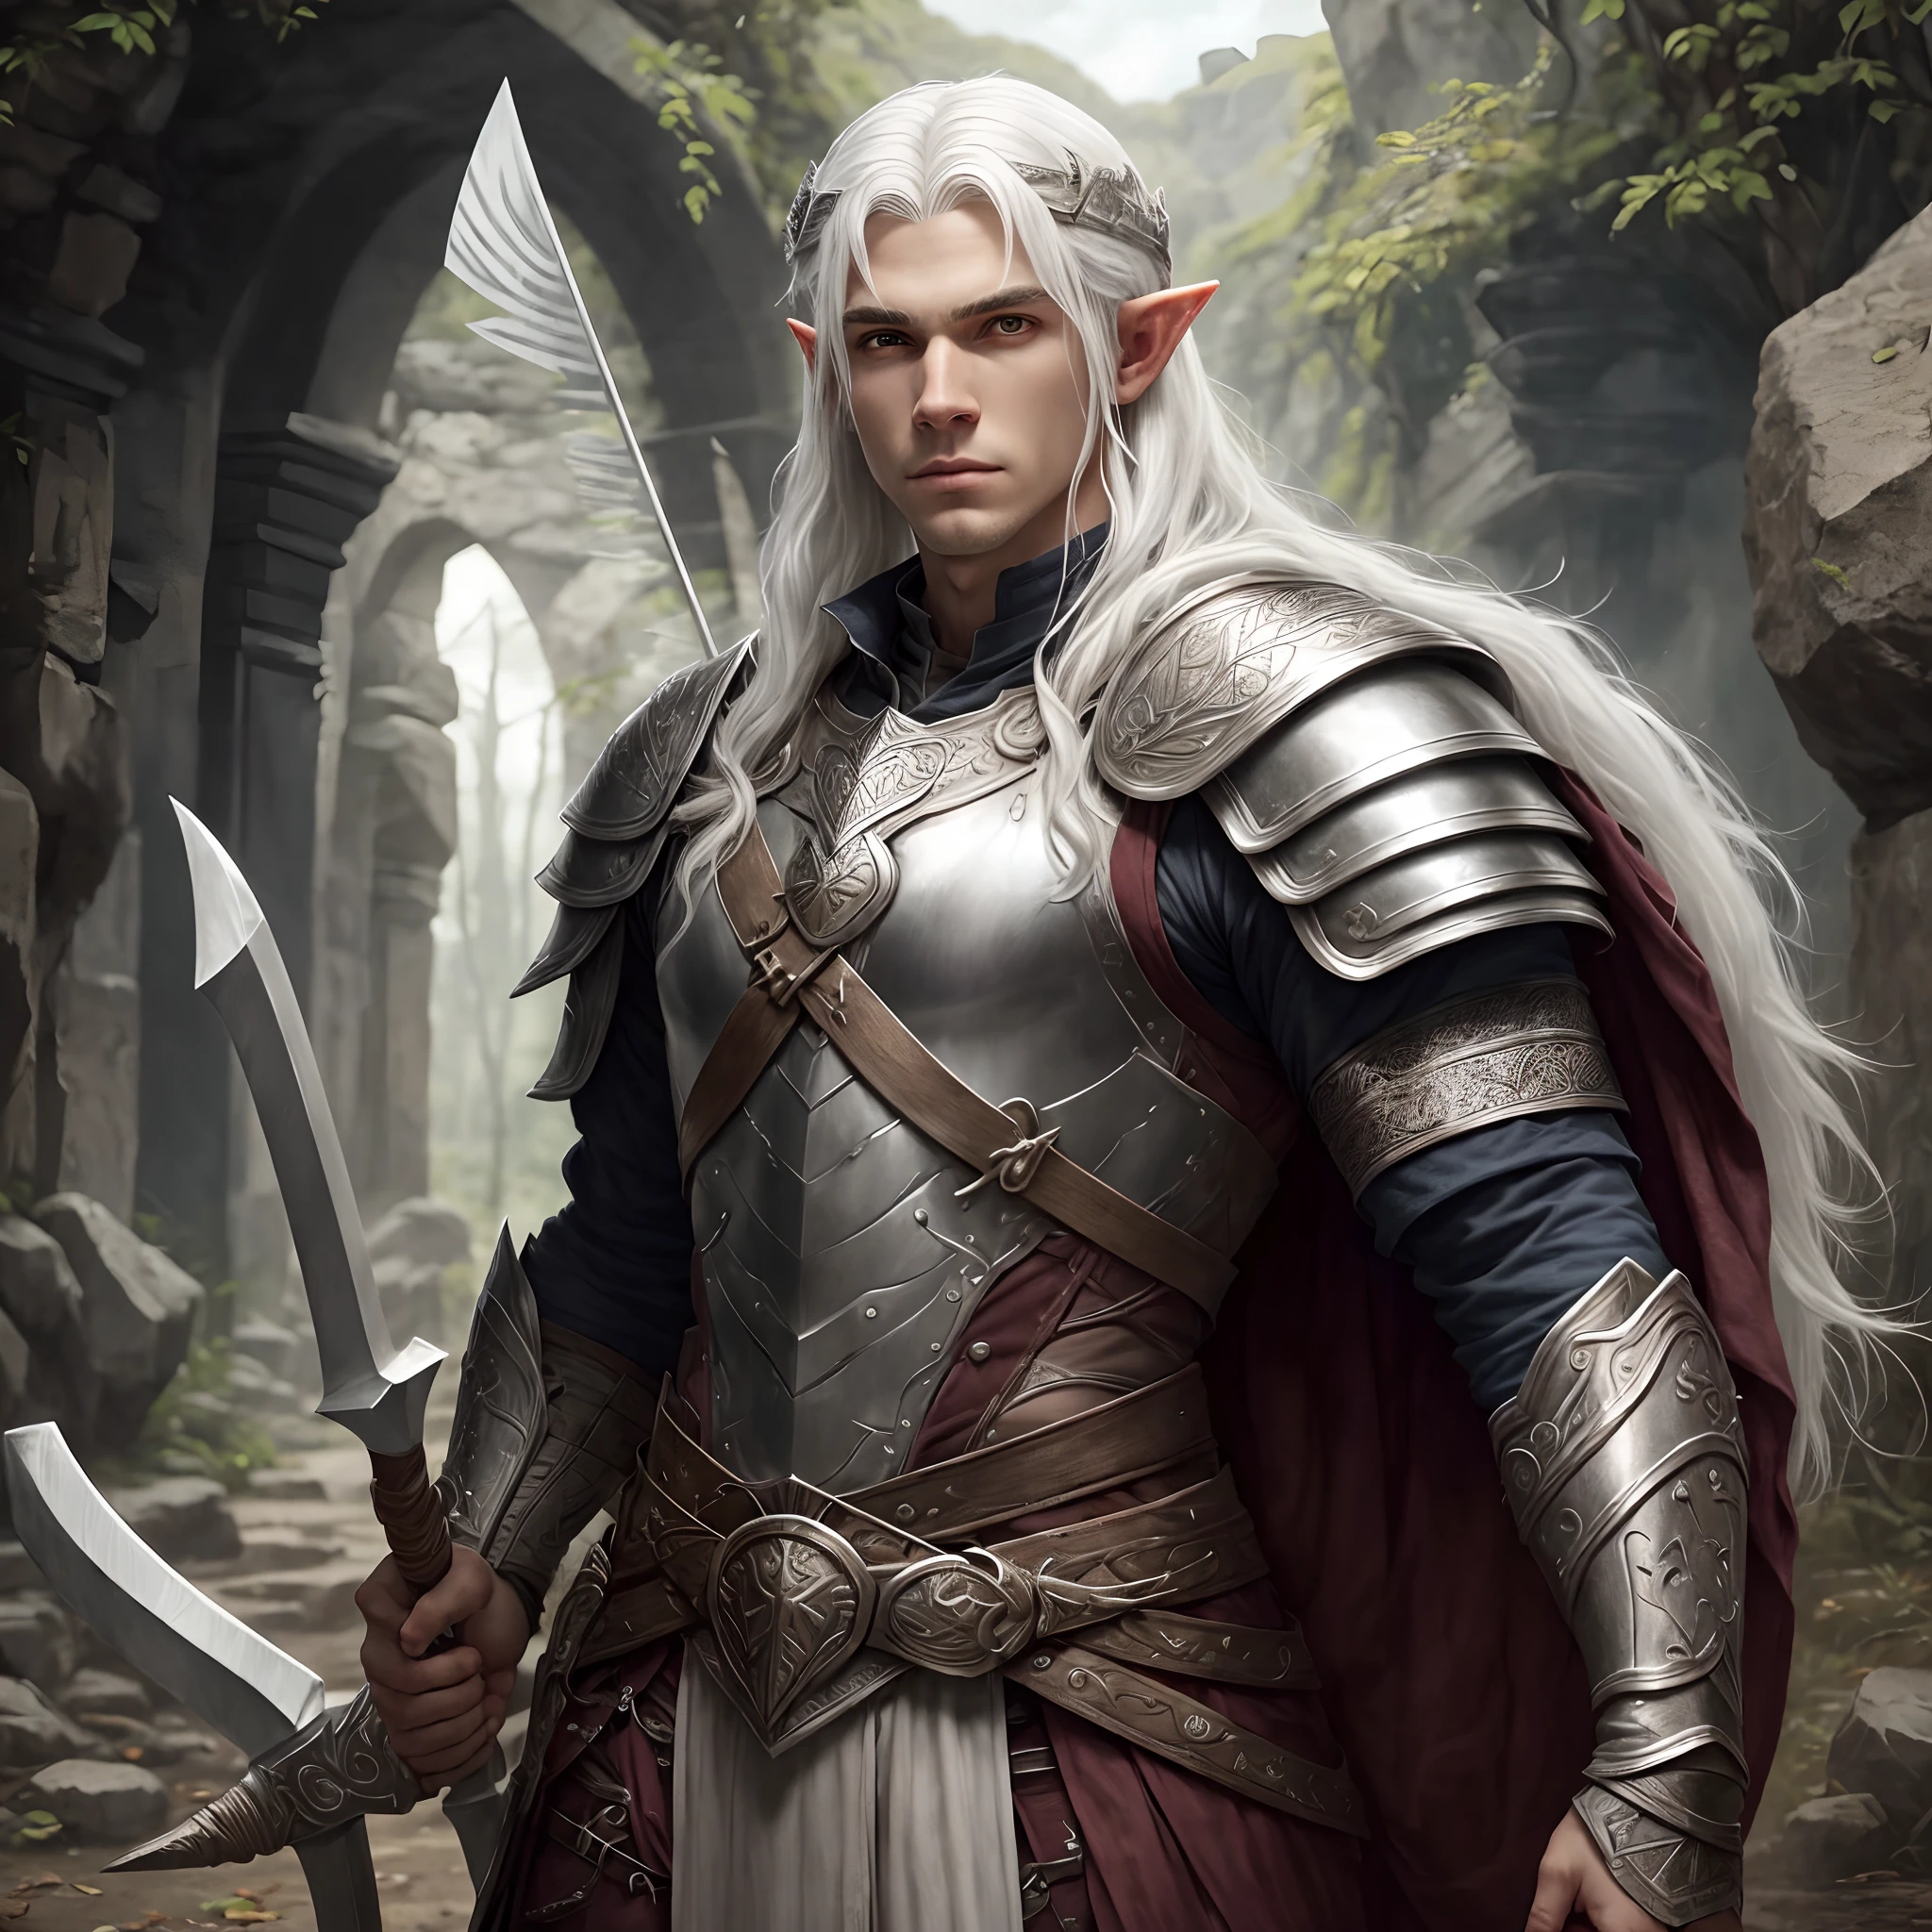 (melhor qualidade, Altas),Jovem elfo de cabelos brancos brilhantes em uma armadura prateada com detalhes rúnicos,segurando um arco e flechas